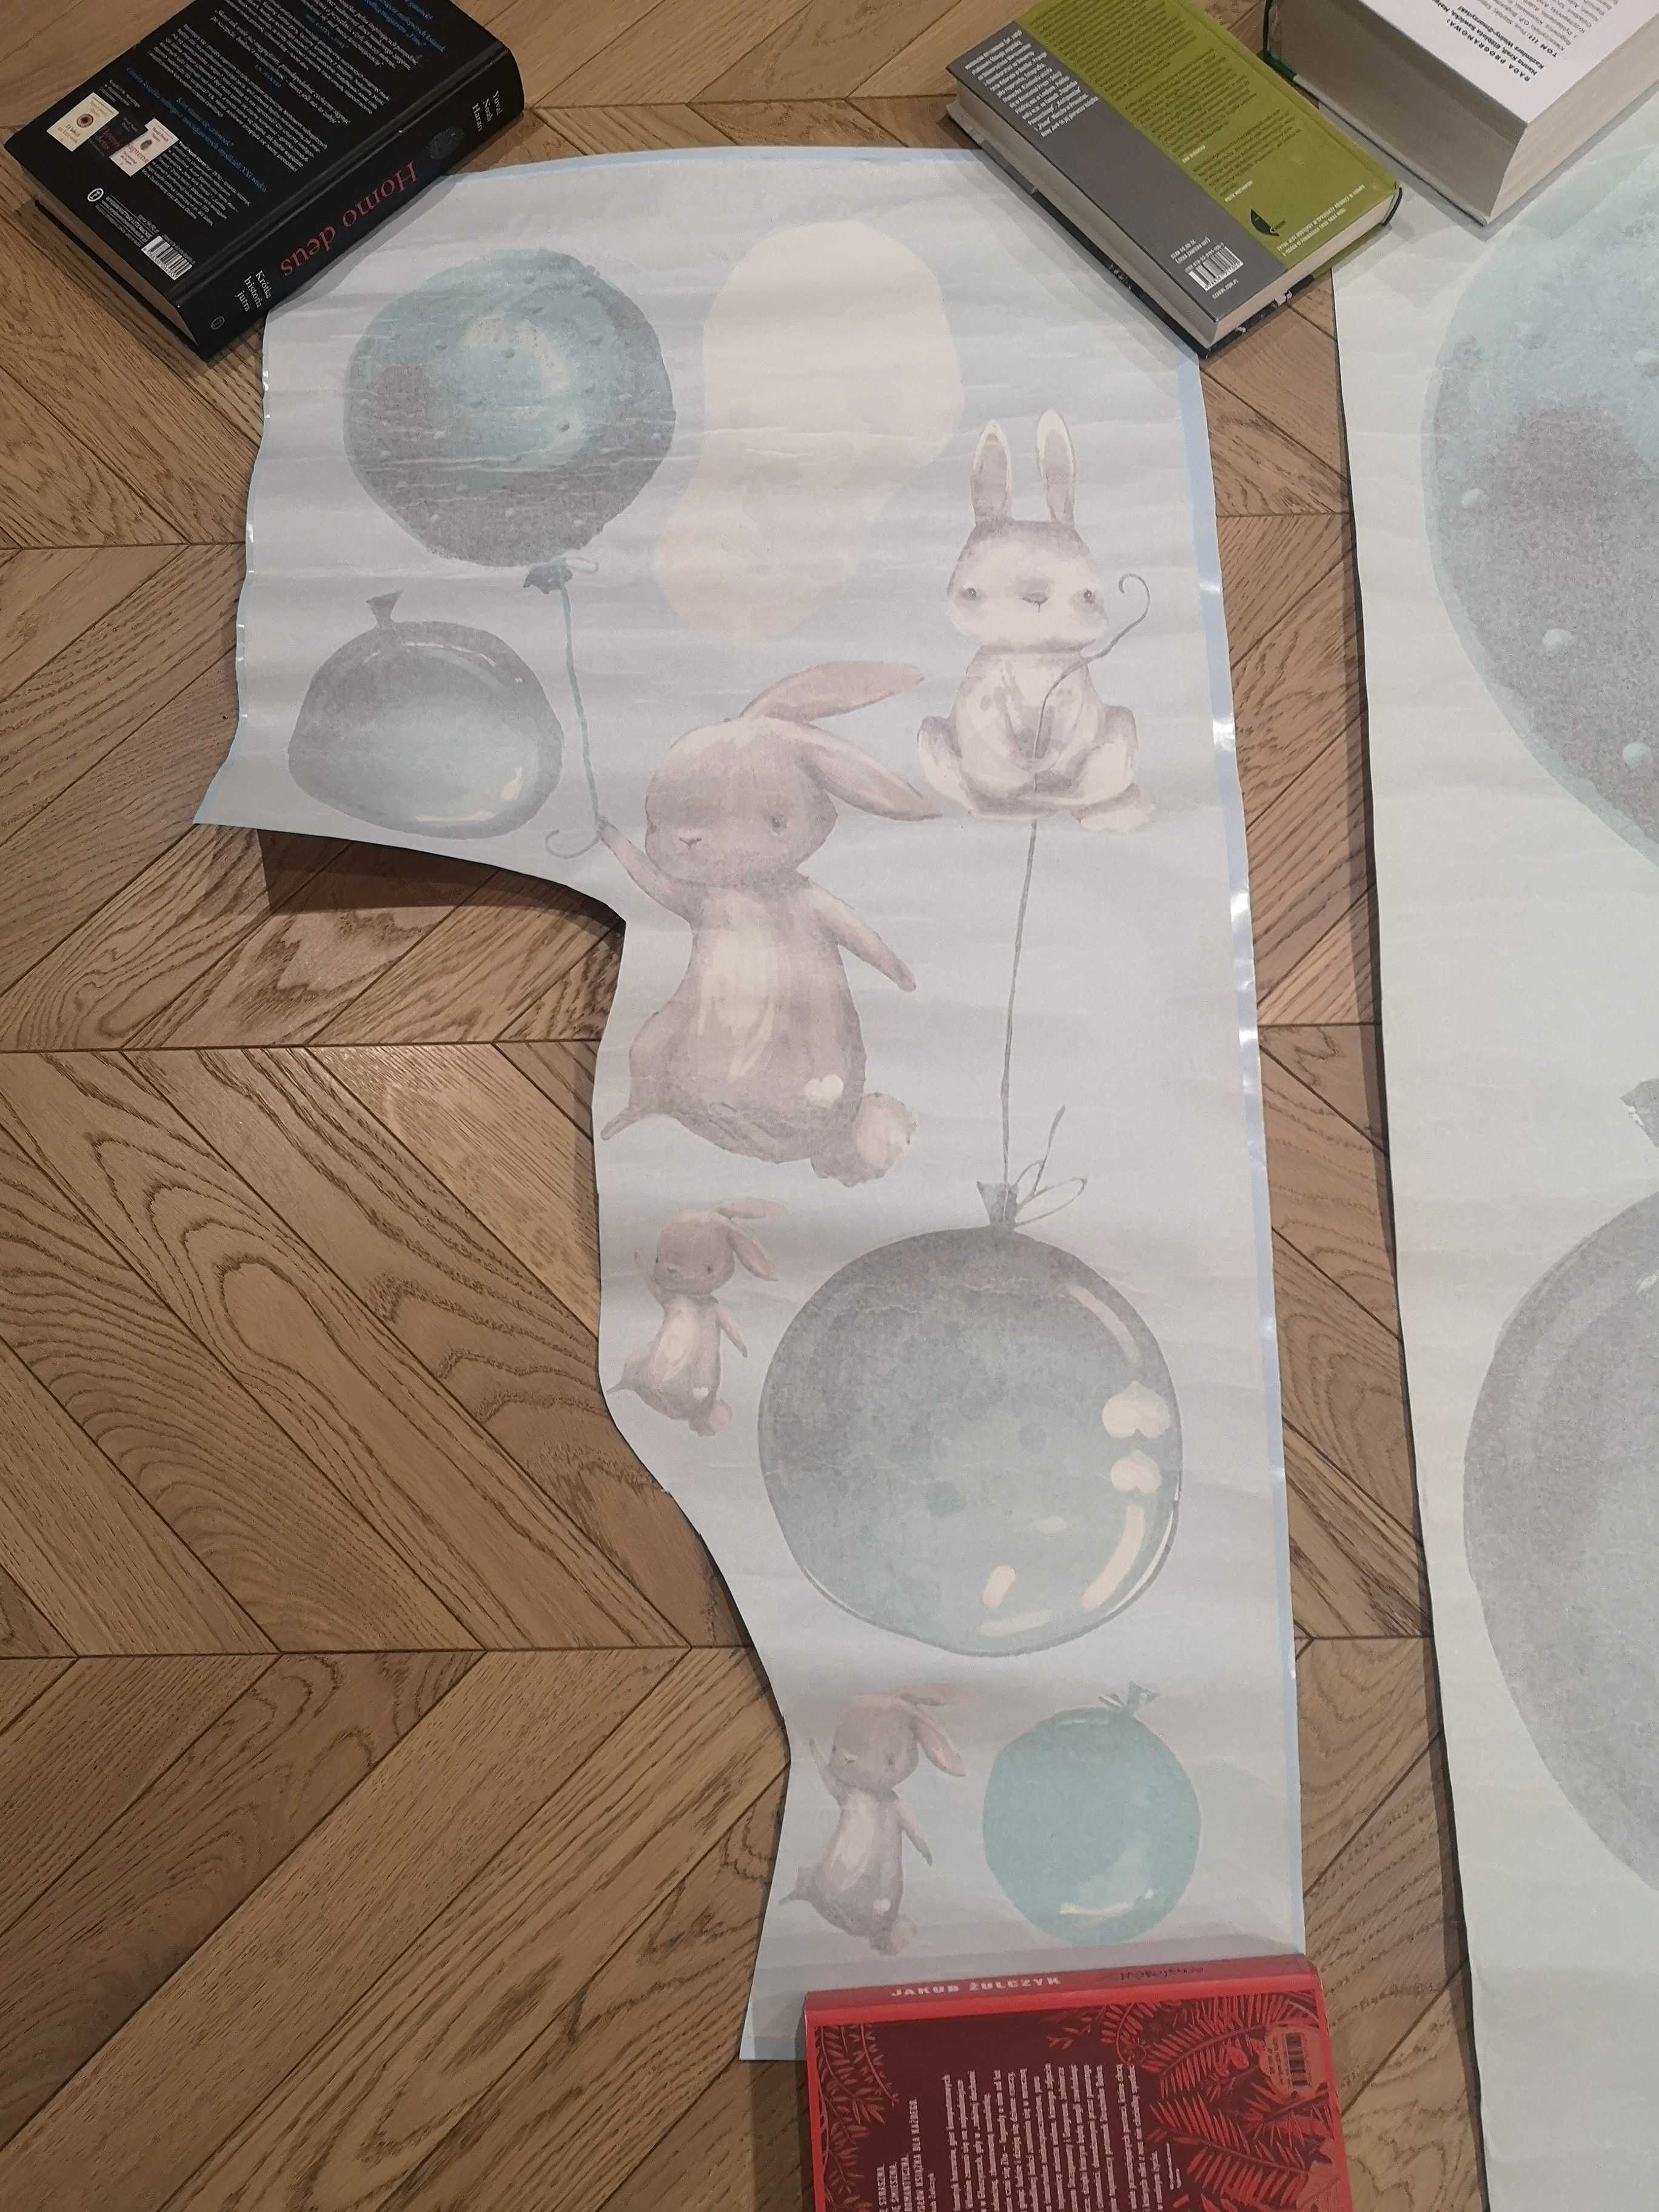 Naklejki dla dzieci fototapeta na ścianę balony króliki chmurki